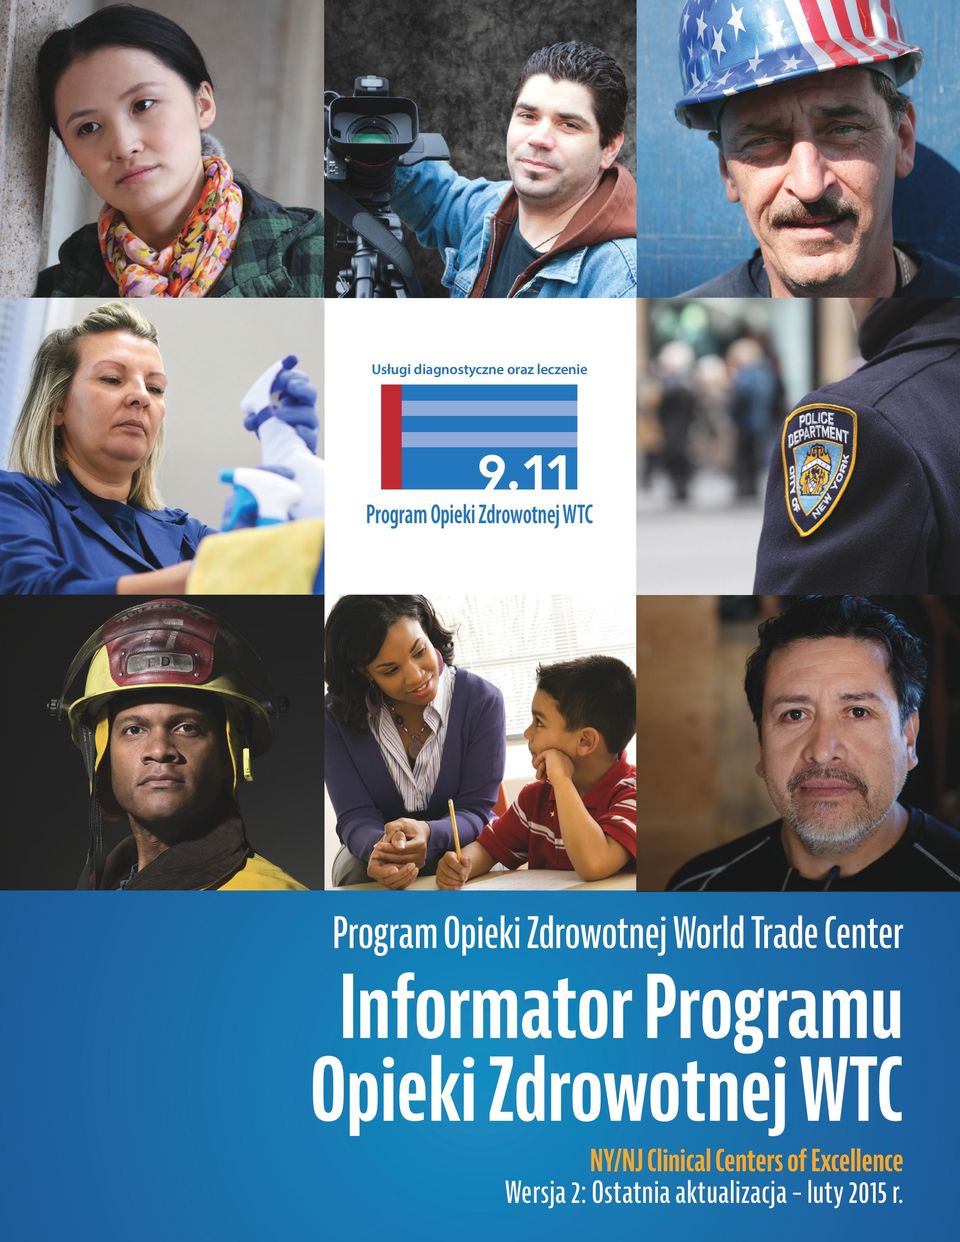 Center Informator Programu Opieki Zdrowotnej WTC NY/NJ